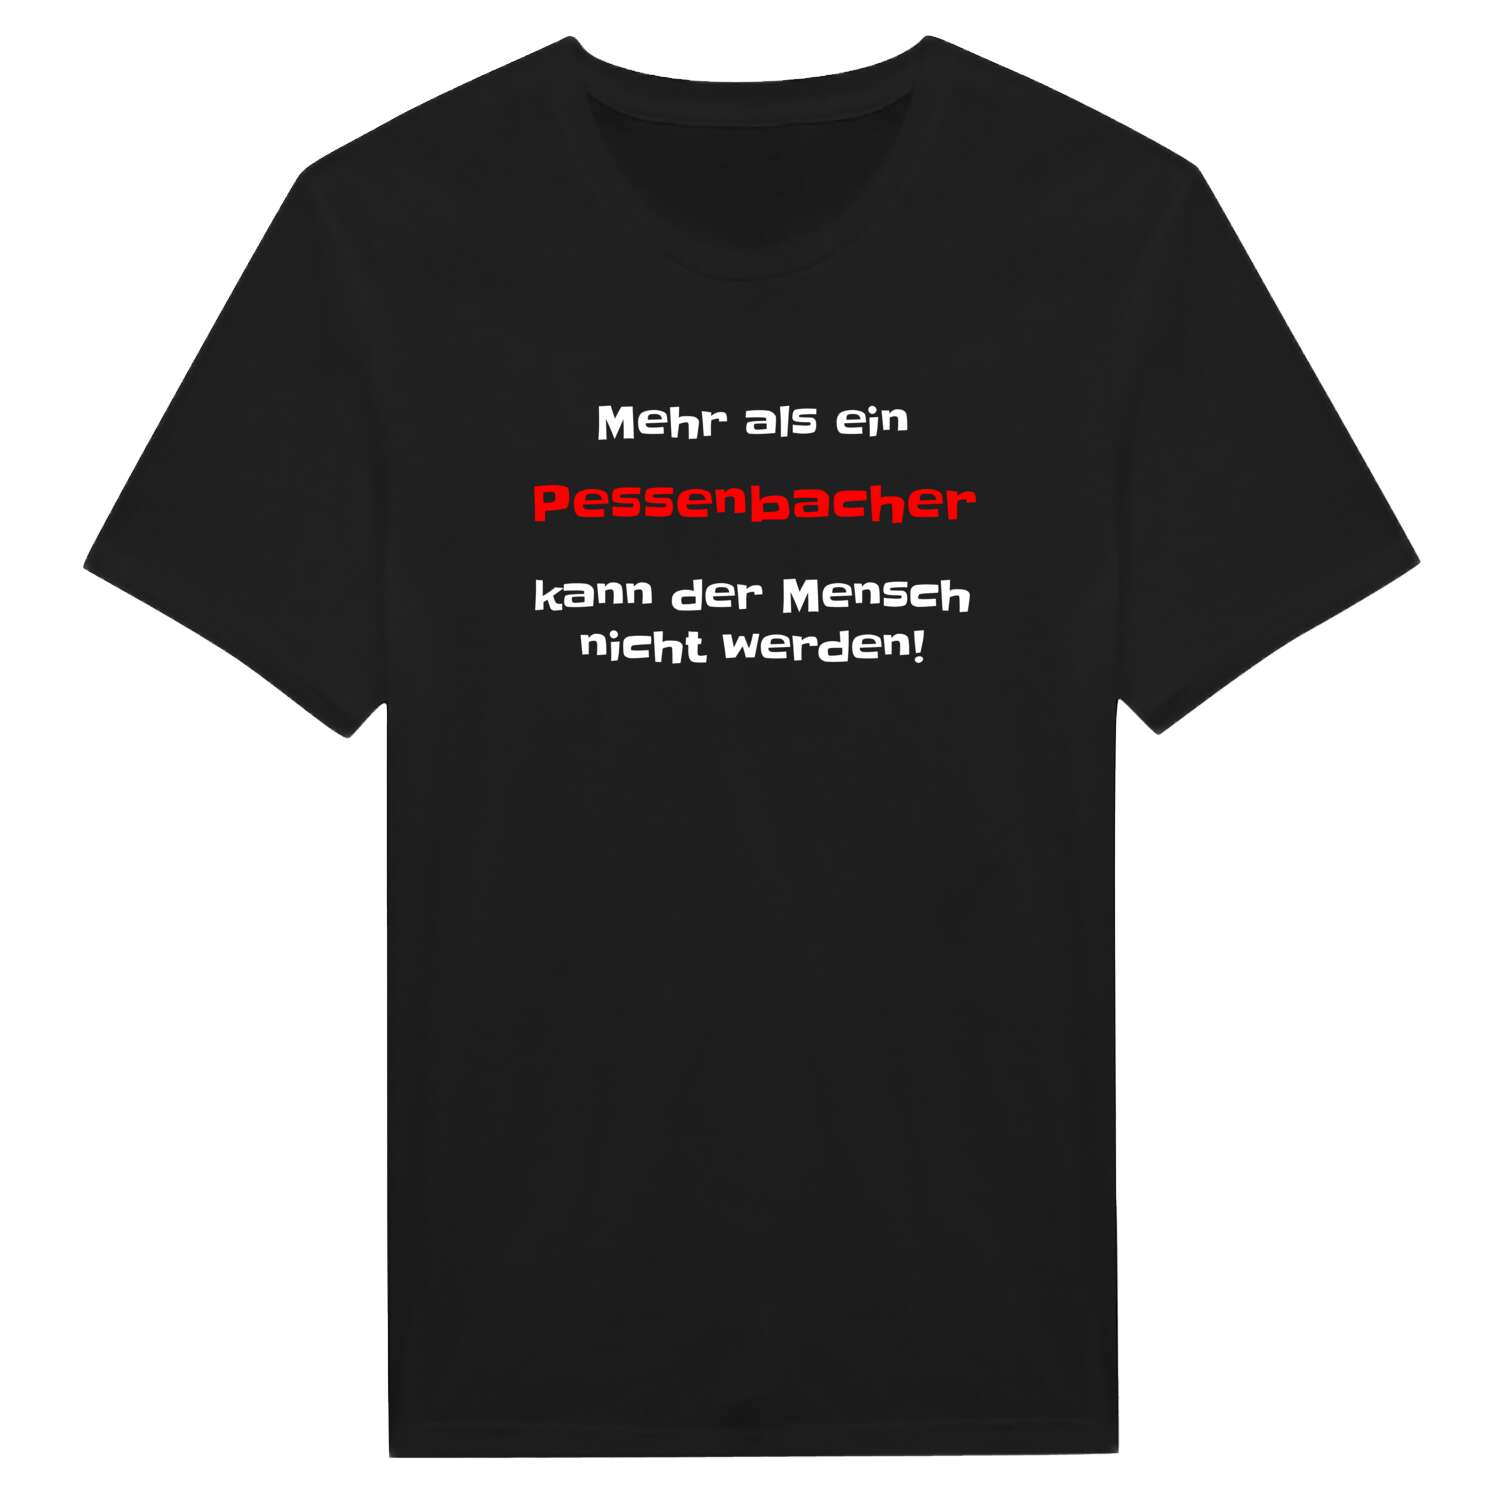 Pessenbach T-Shirt »Mehr als ein«